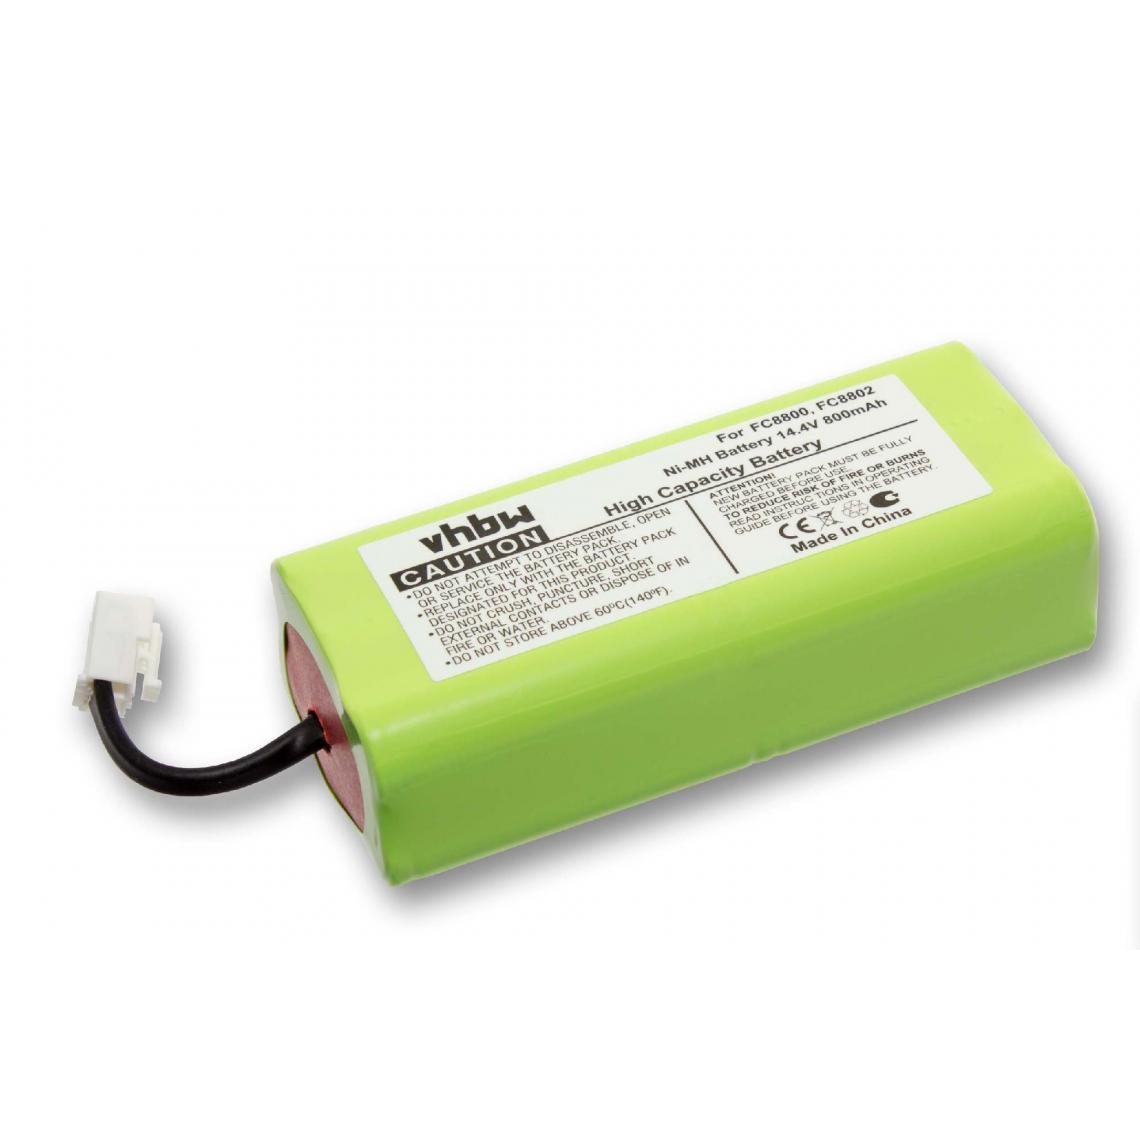 Vhbw - vhbw Batterie remplacement pour Philips CRP756/01, NR49AA800P pour aspirateur, robot électroménager (800mAh, 14,4V, NiMH) - Accessoire entretien des sols